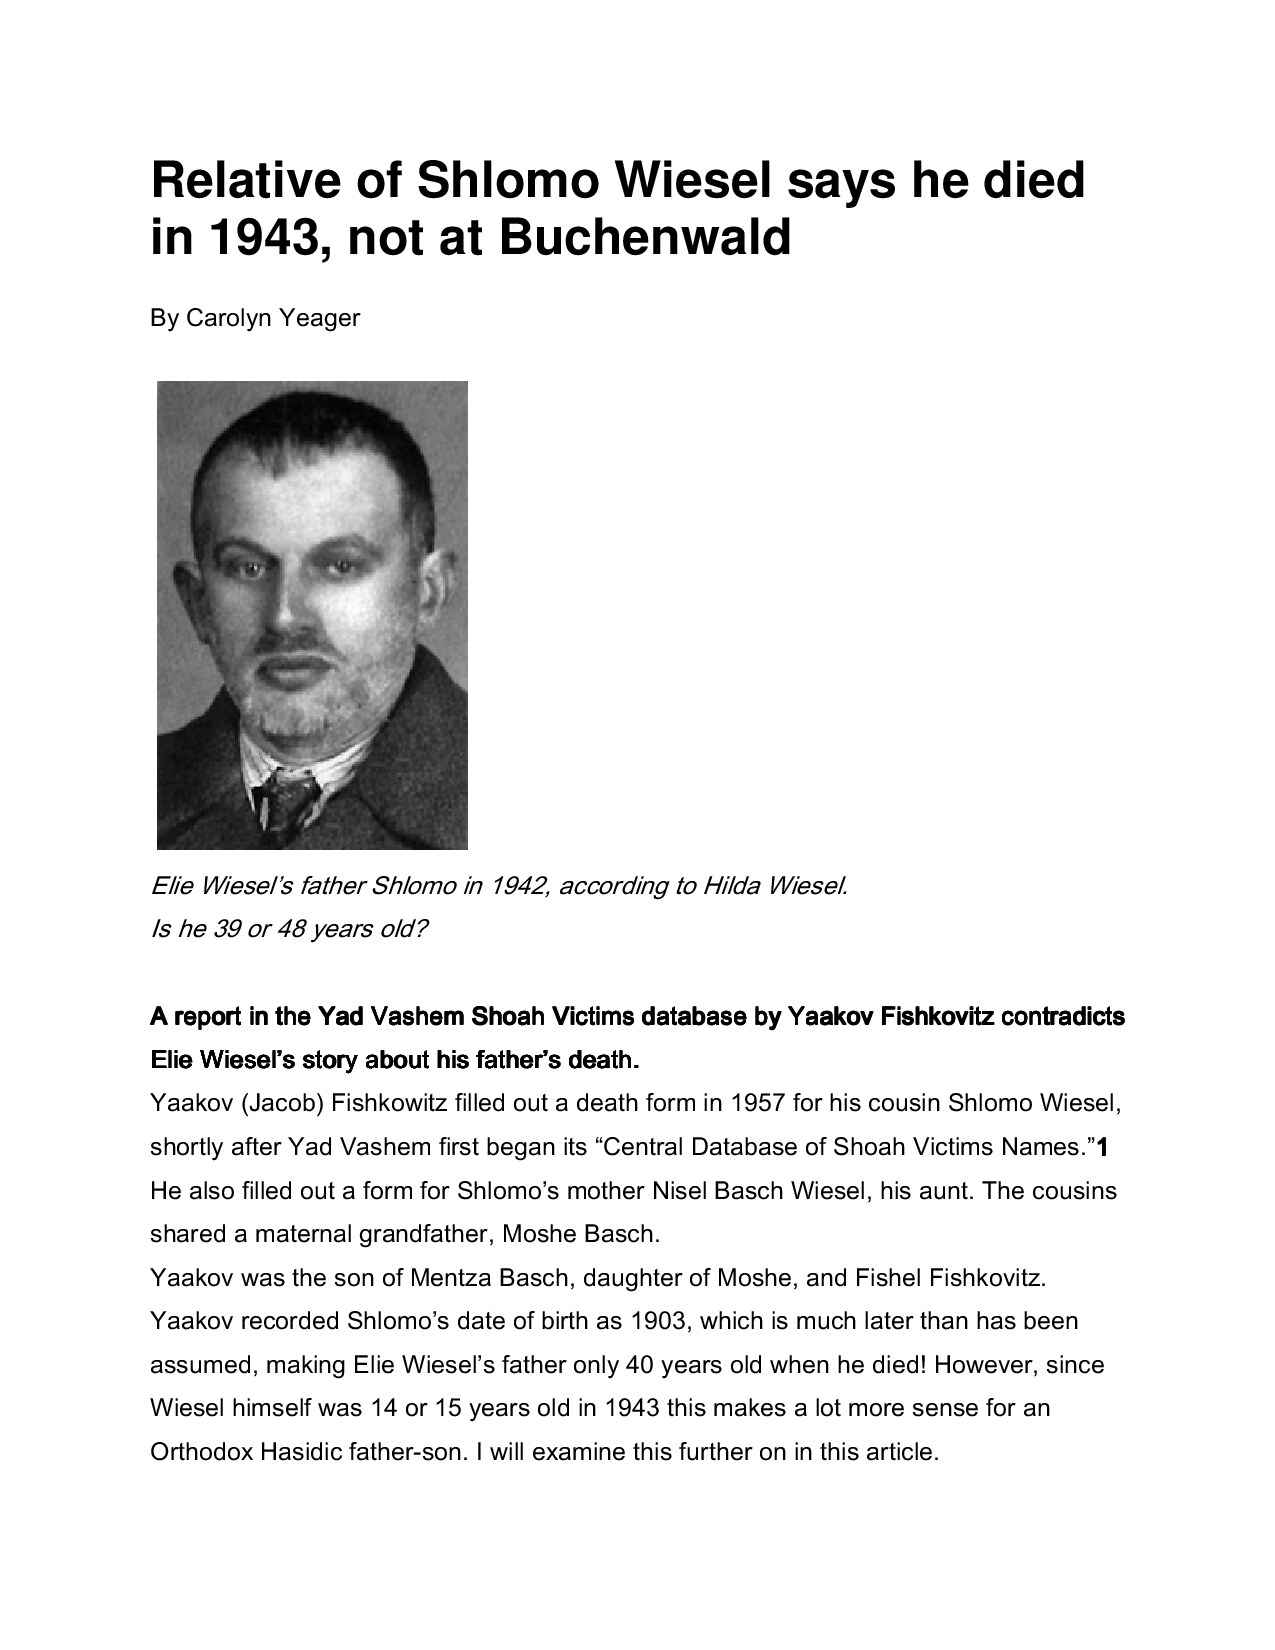 Microsoft Word - Relative of Shlomo Wiesel says he died in 1943.doc